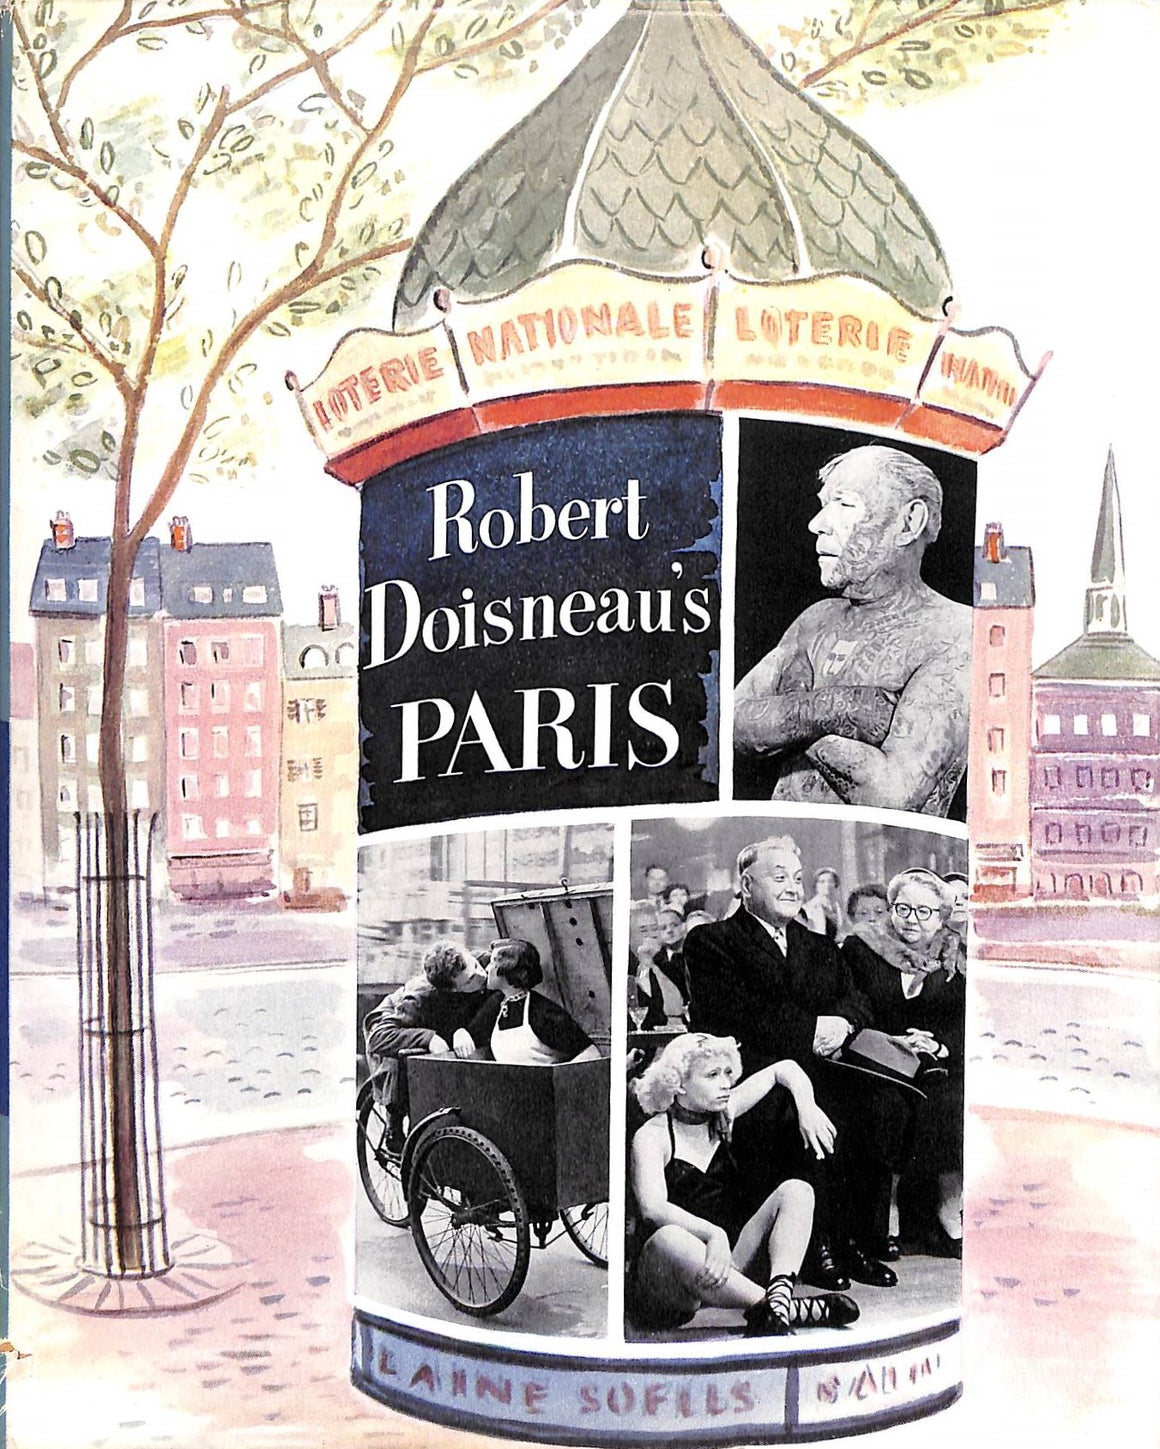 "Robert Doisneau's Paris" 1956 CENDRARS, Blaise [preface]